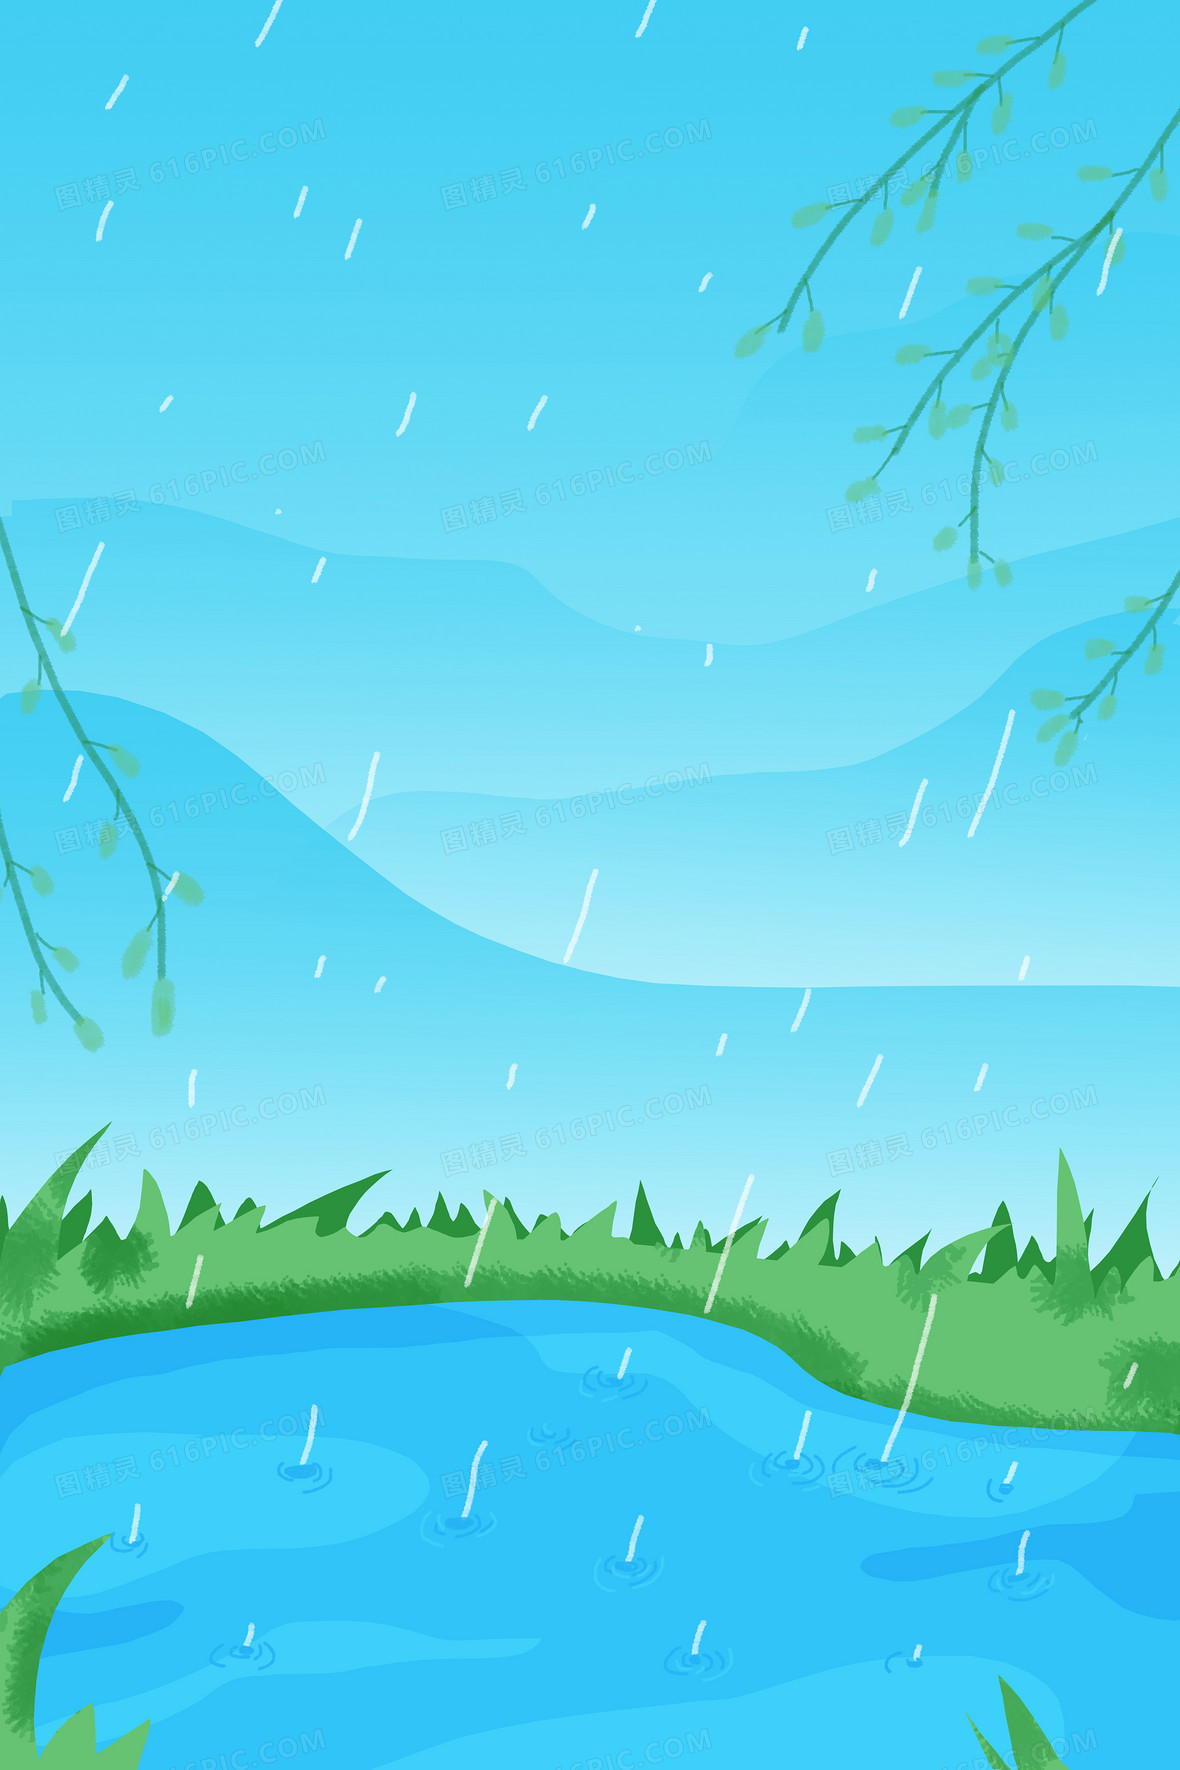 谷雨原创手绘雨滴落入池塘插画风格背景